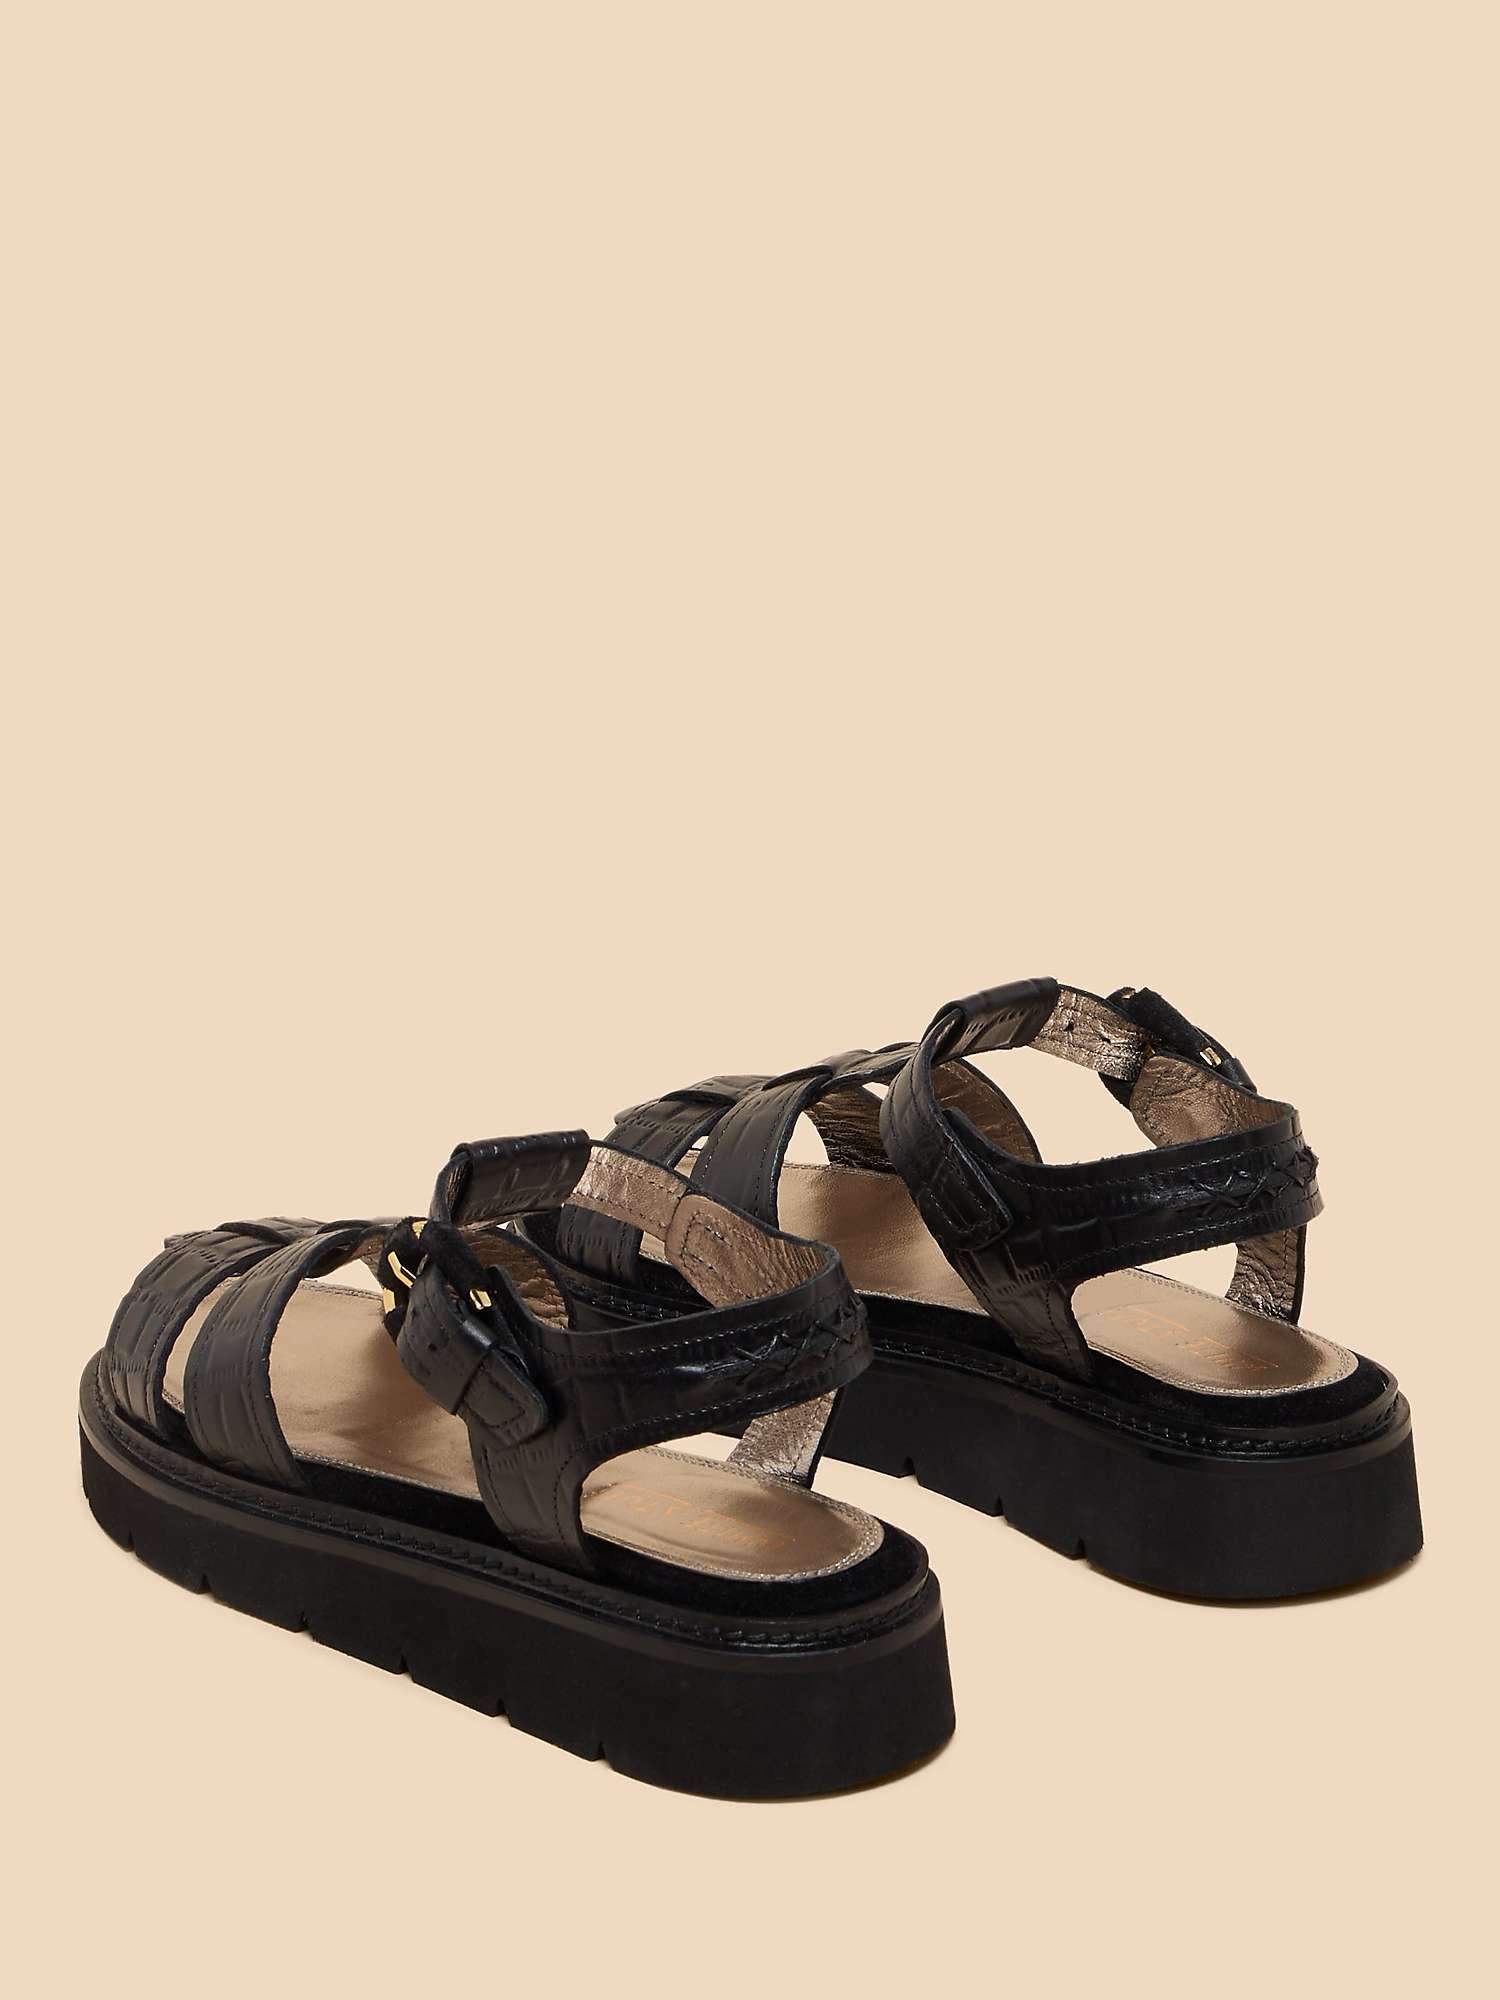 Buy White Stuff Rose Croc Effect Leather Flatform Sandals, Black Online at johnlewis.com